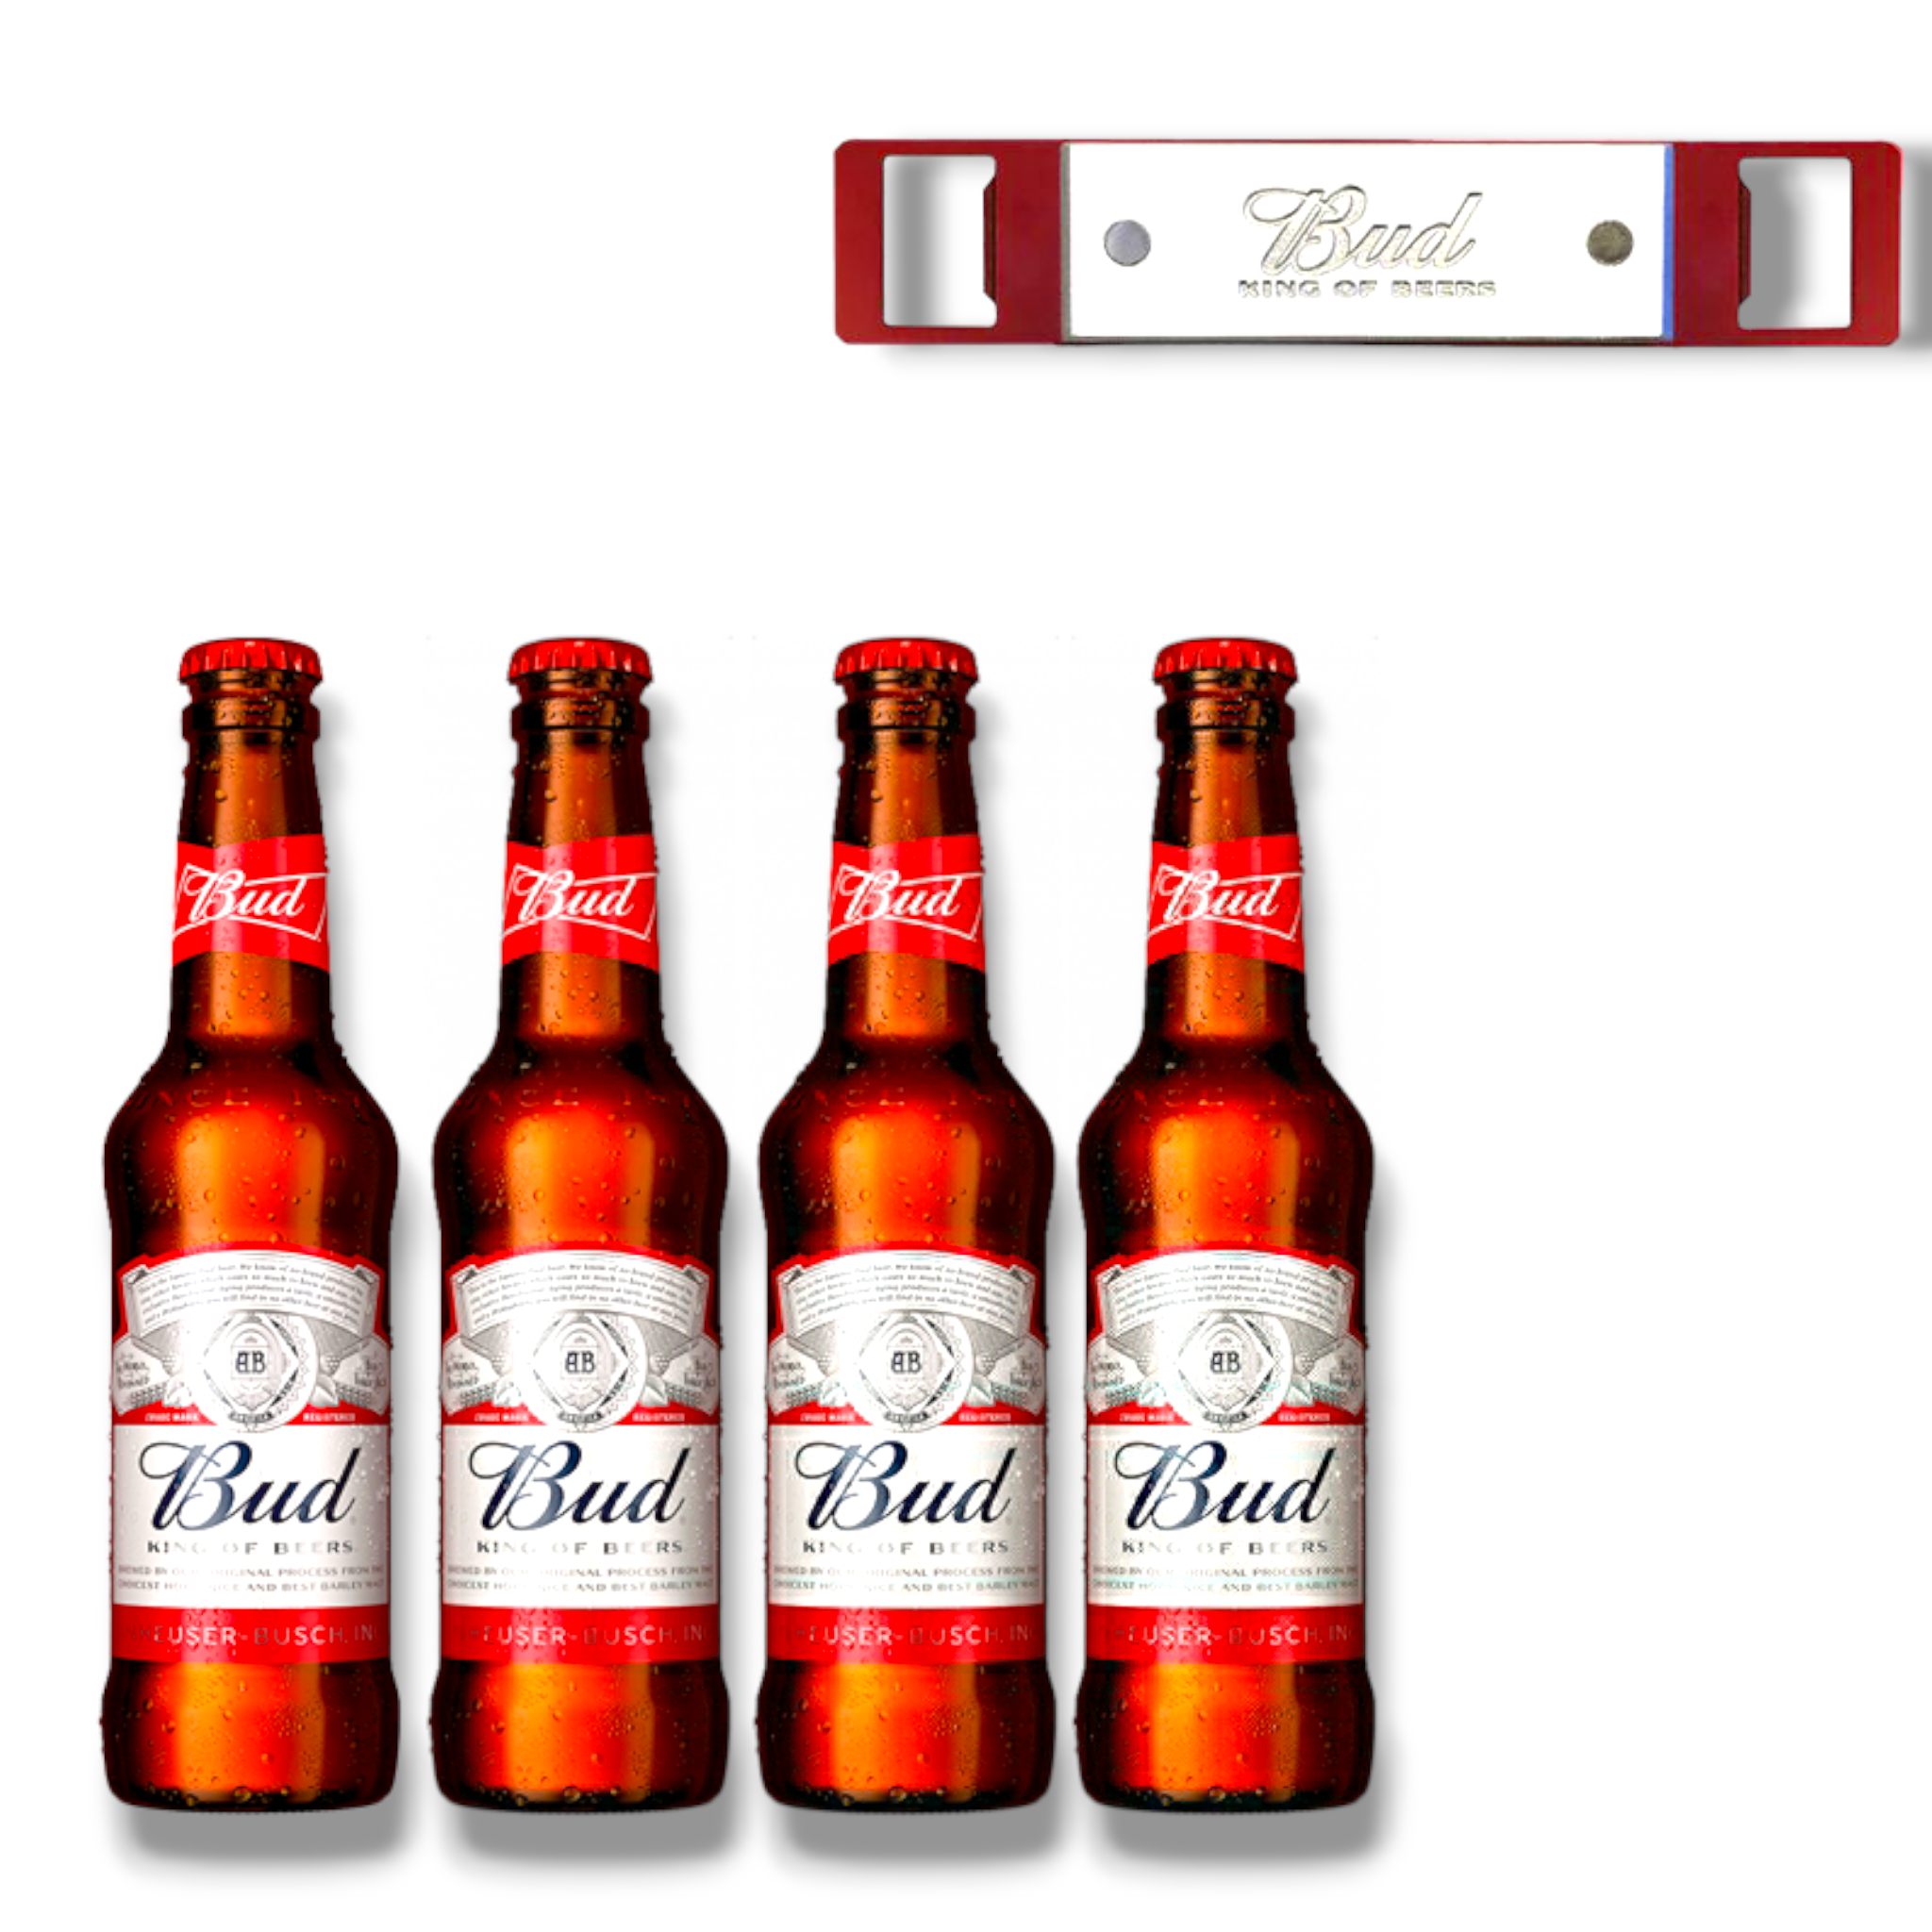 4 x Bud Bier + Bud King of Beer Barblade Flaschenöffner